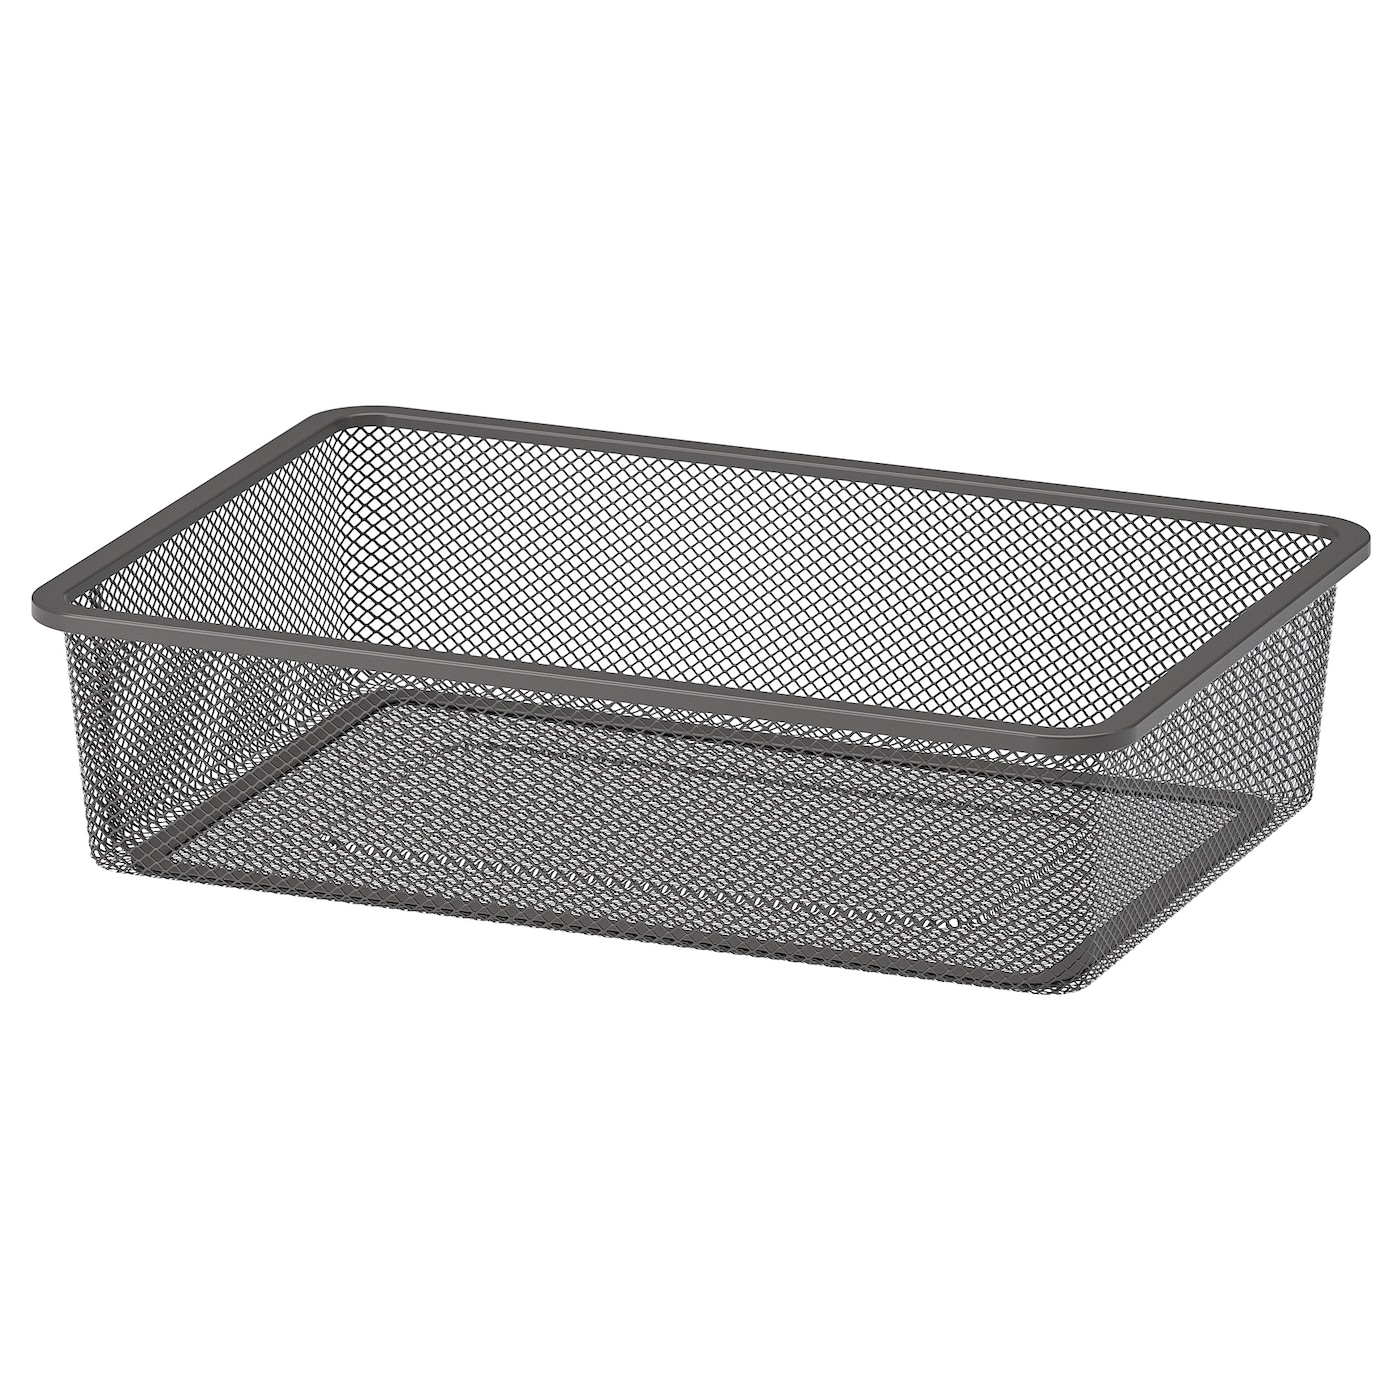 Ящик для хранения - TROFAST IKEA/ ТРУФАСТ ИКЕА, 40х30х10 см, черный